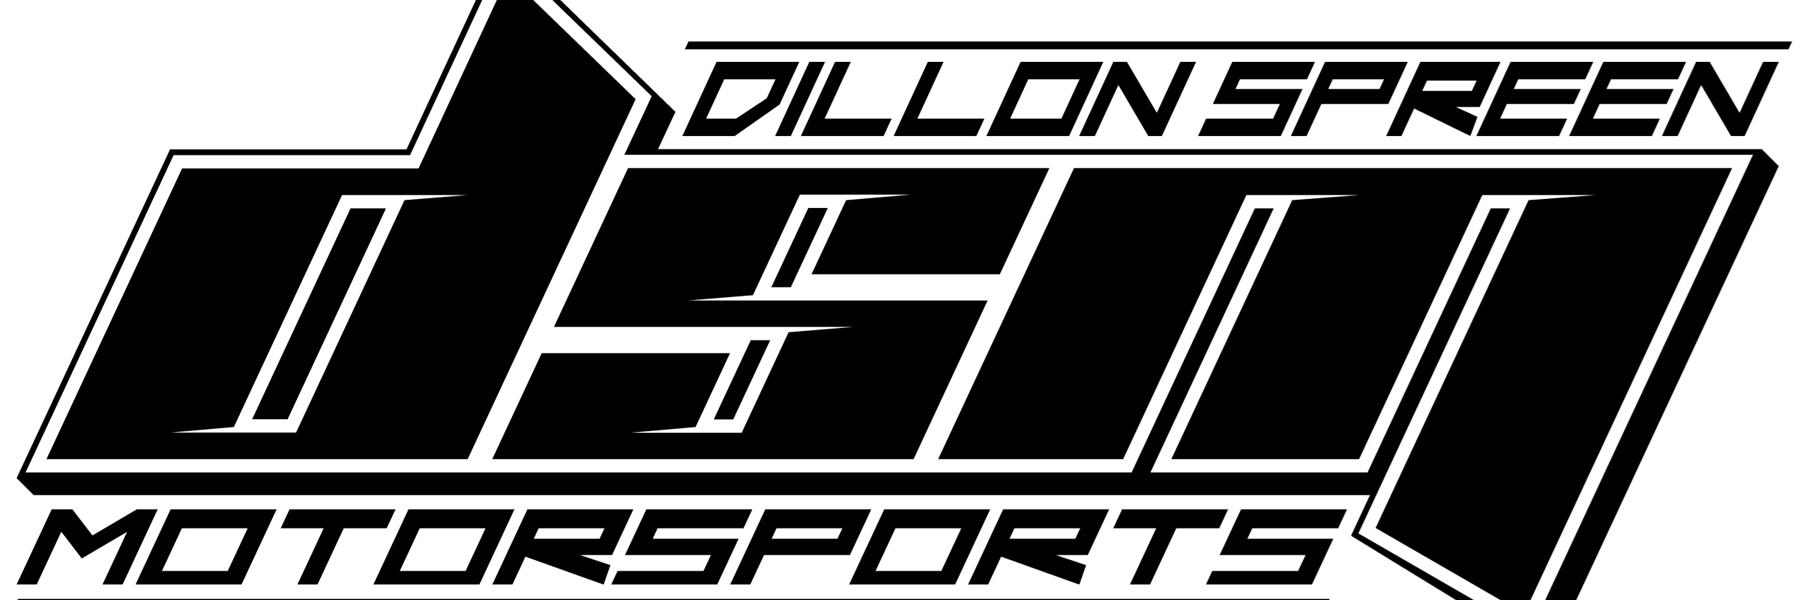 Dillon Spreen